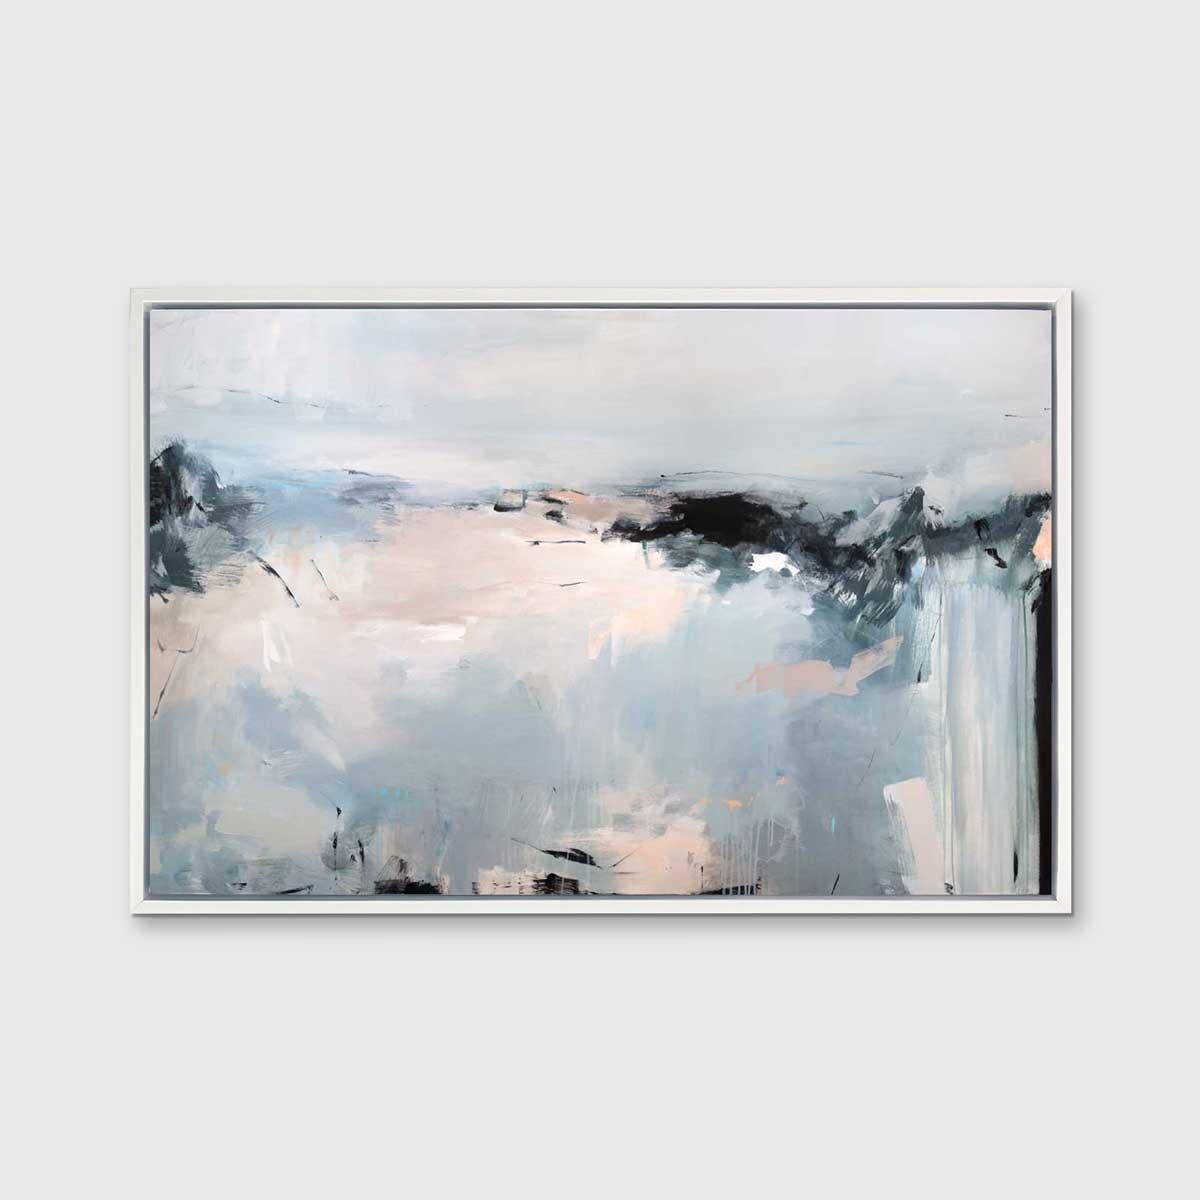 Cette impression giclée abstraite en édition limitée de Kelly Rossetti présente une palette froide, avec des accents de bleu clair, de gris, de blanc, de noir charbon et de rose pâle contrastant, ajoutés par de larges touches énergiques. La pièce